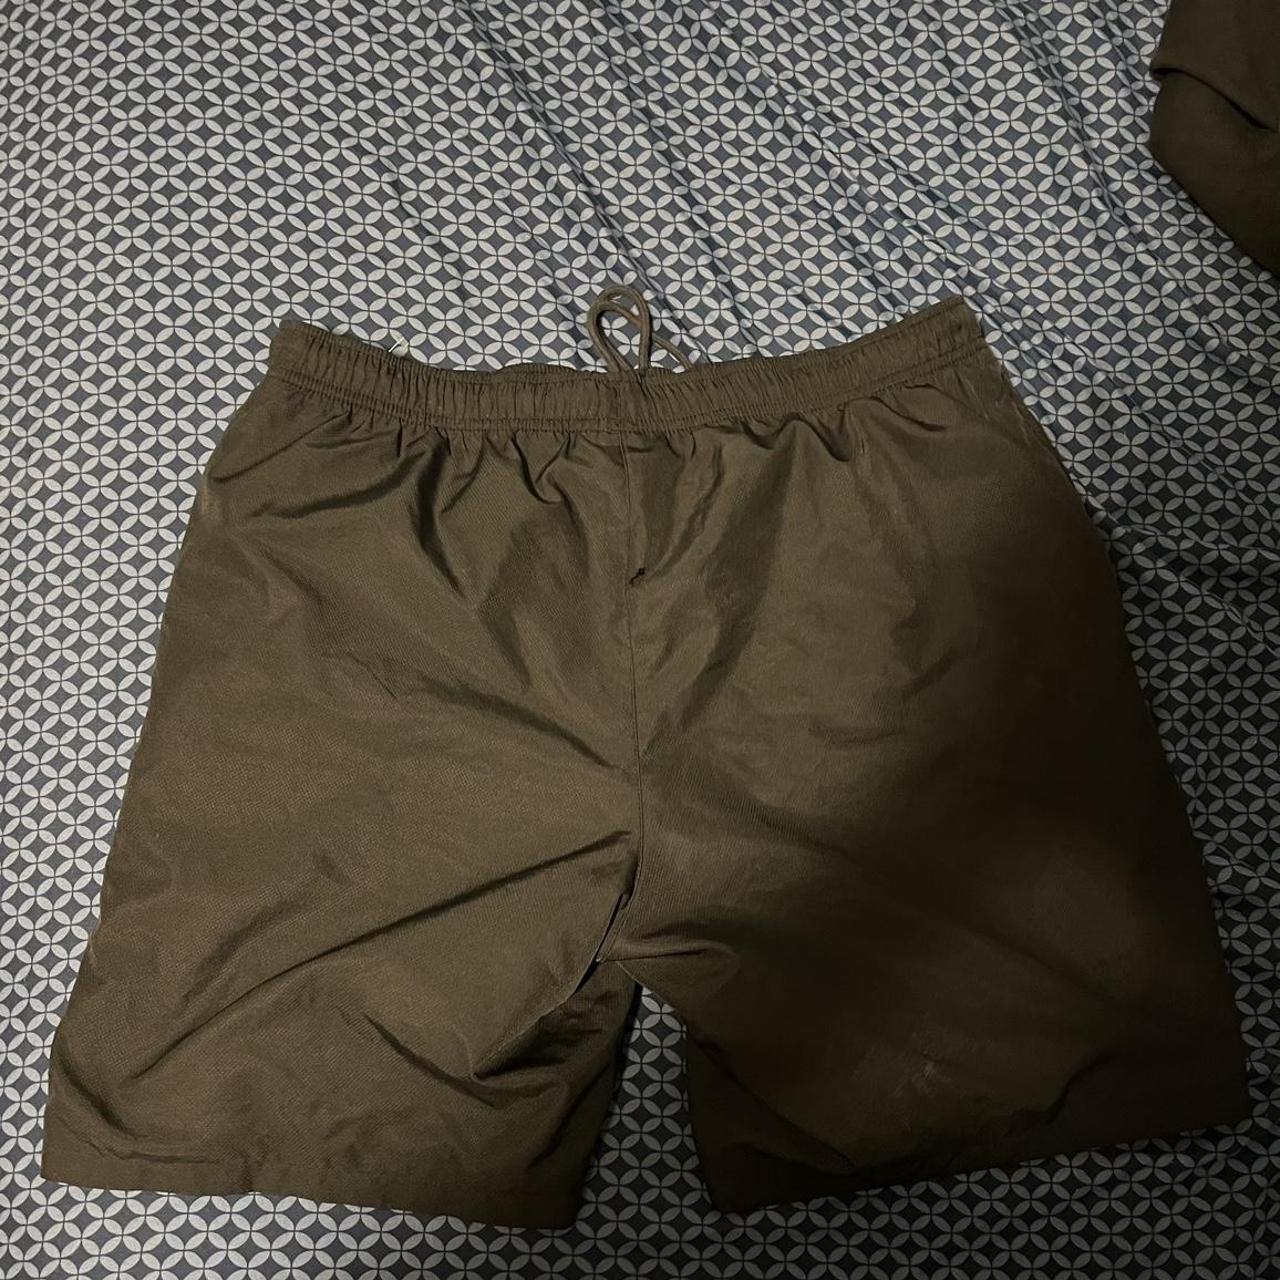 Lacoste sport shorts - Depop